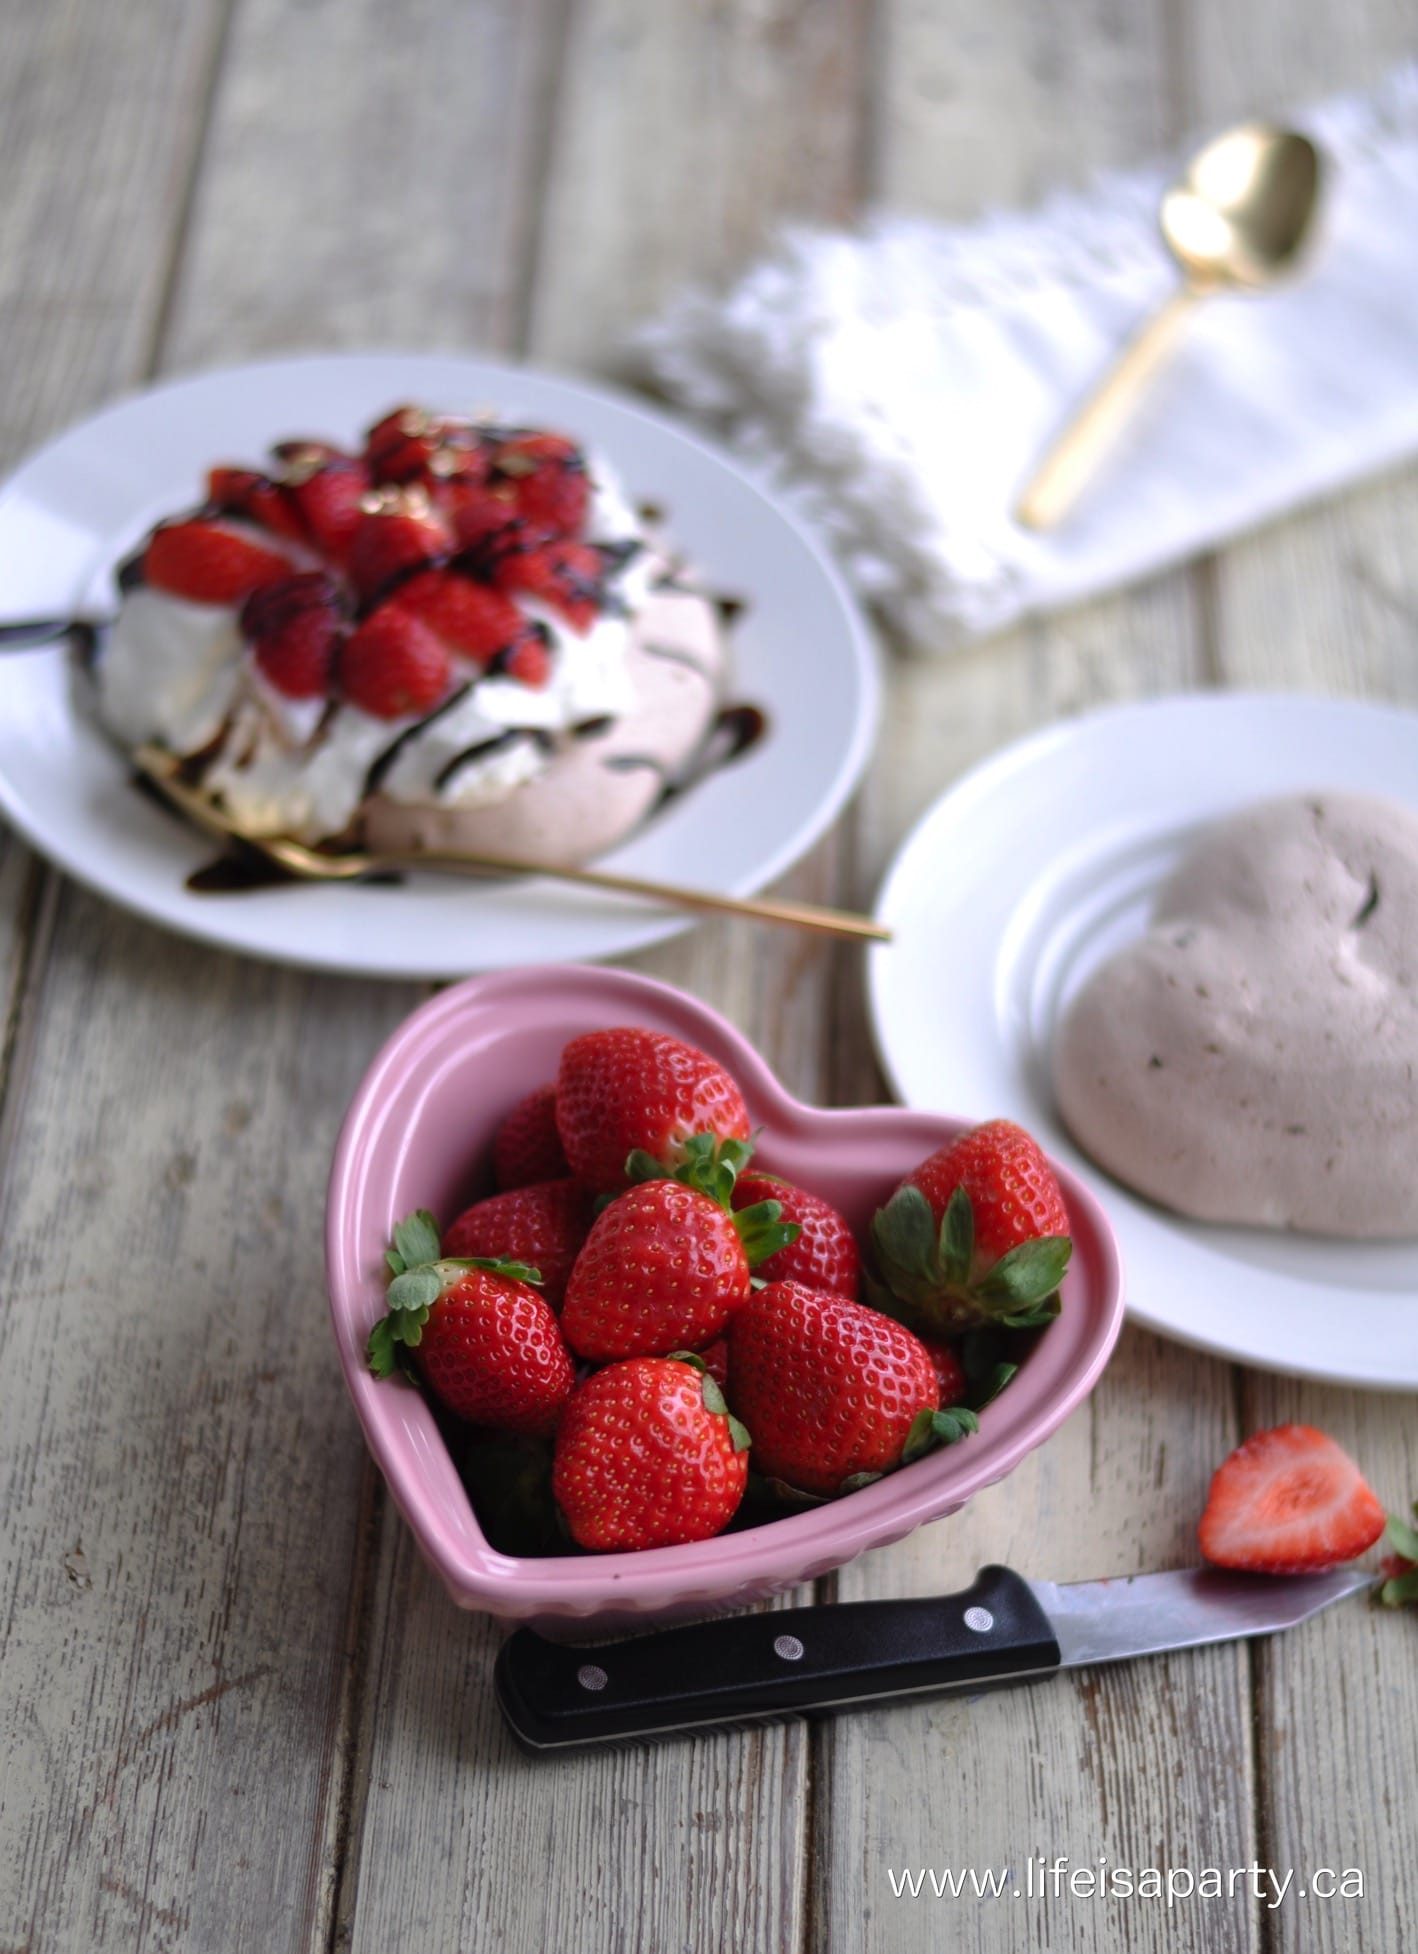 Chocolate Pavlova with fresh strawberries